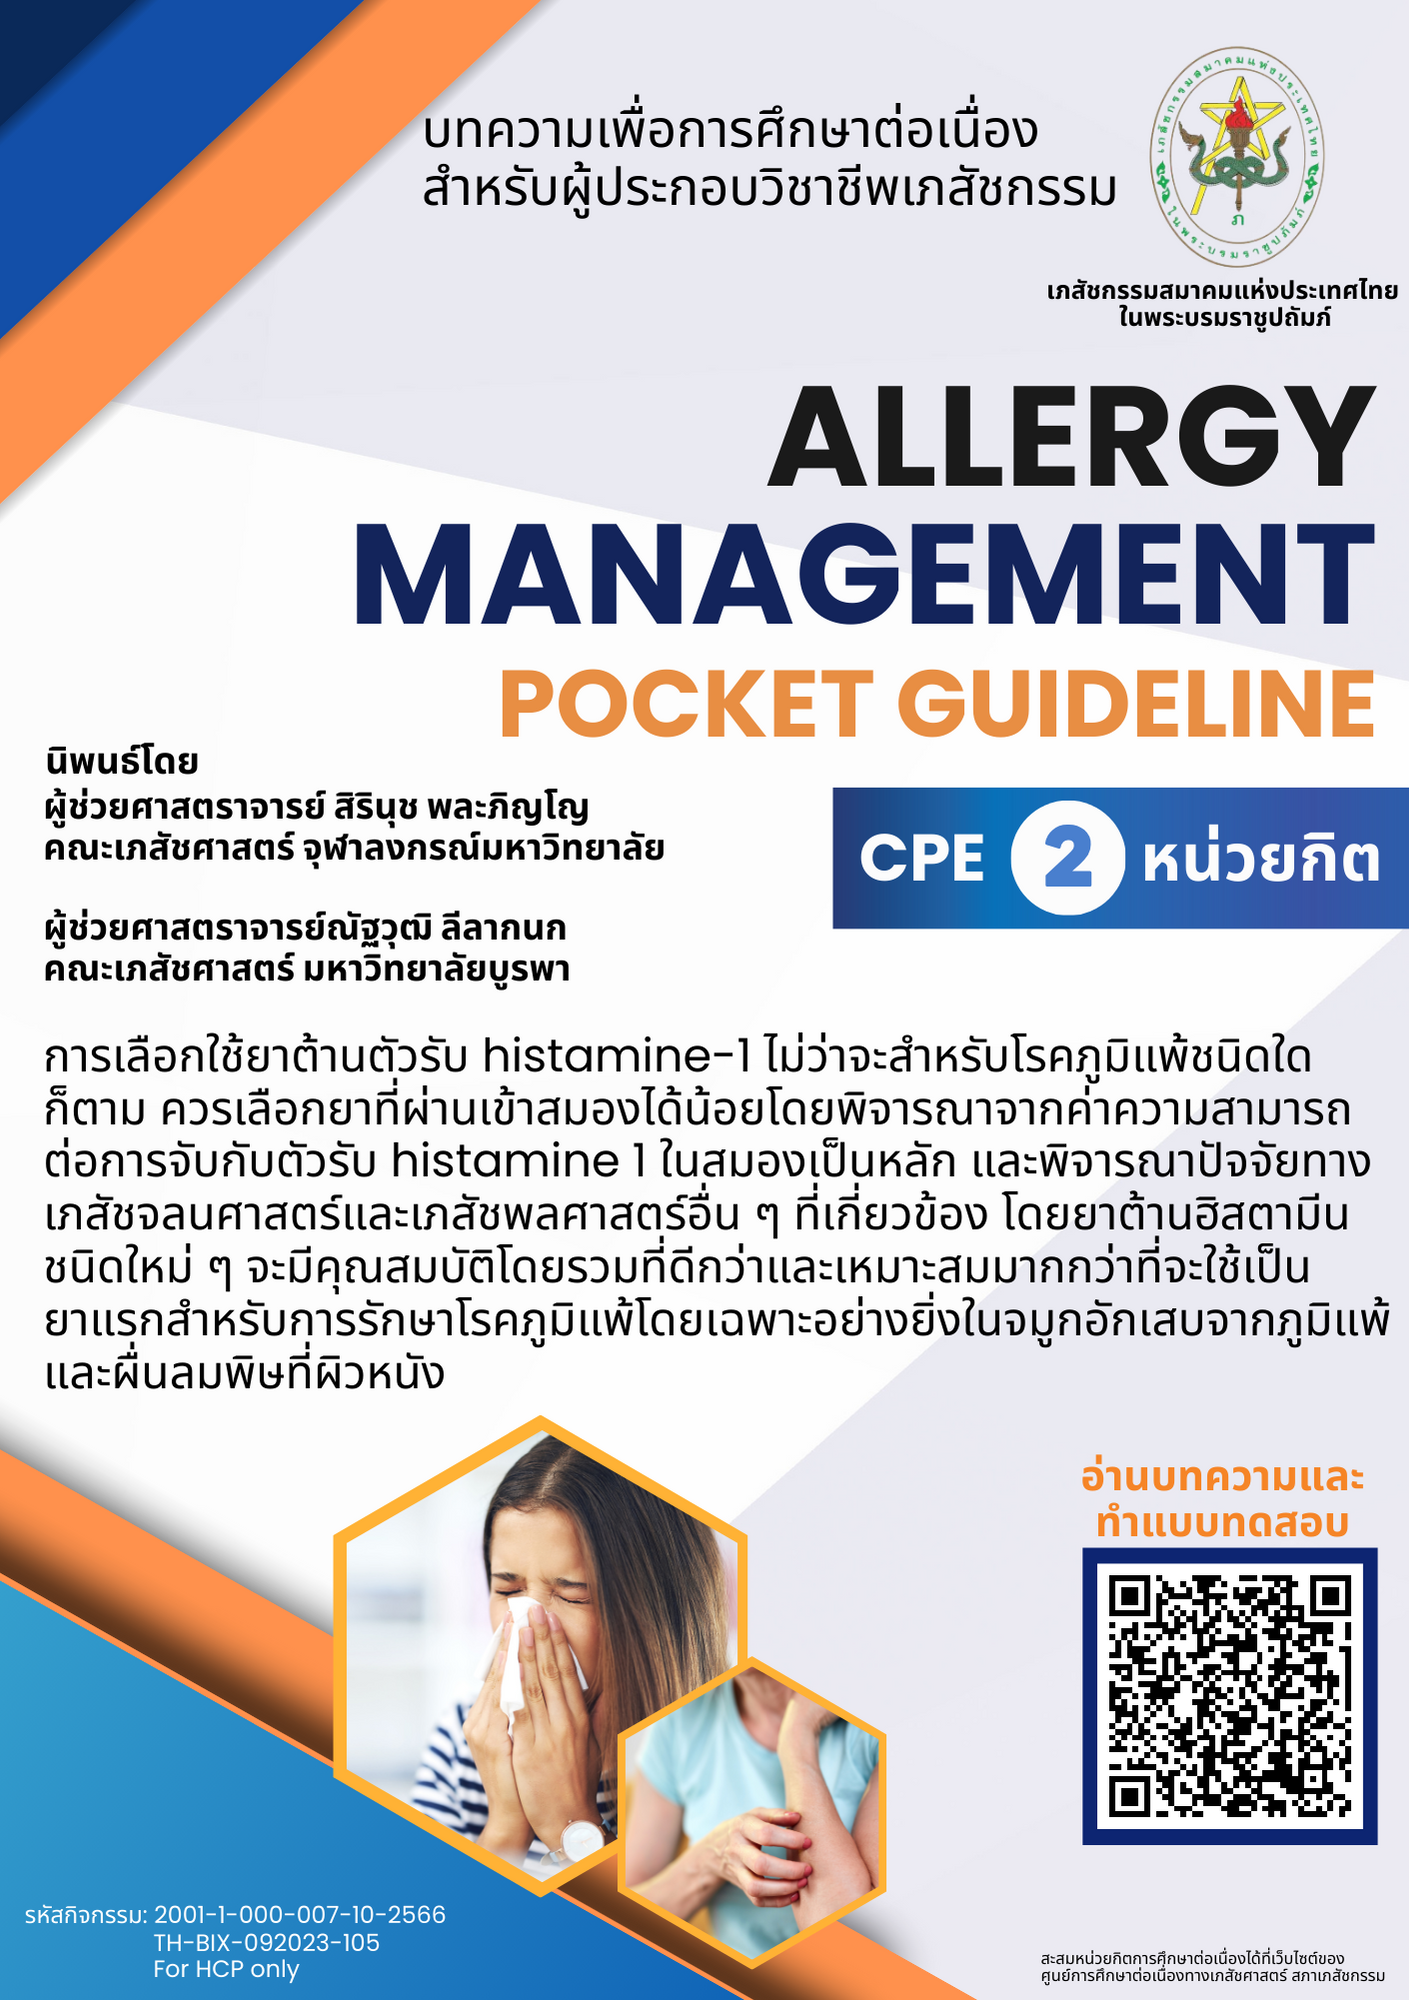 บทความวิชาการ - แนวทางการดูแลโรคภูมิแพ้ฉบับพัฒนา (Redesigned guideline of Allergy Care) CPE = 2 หน่วยกิต